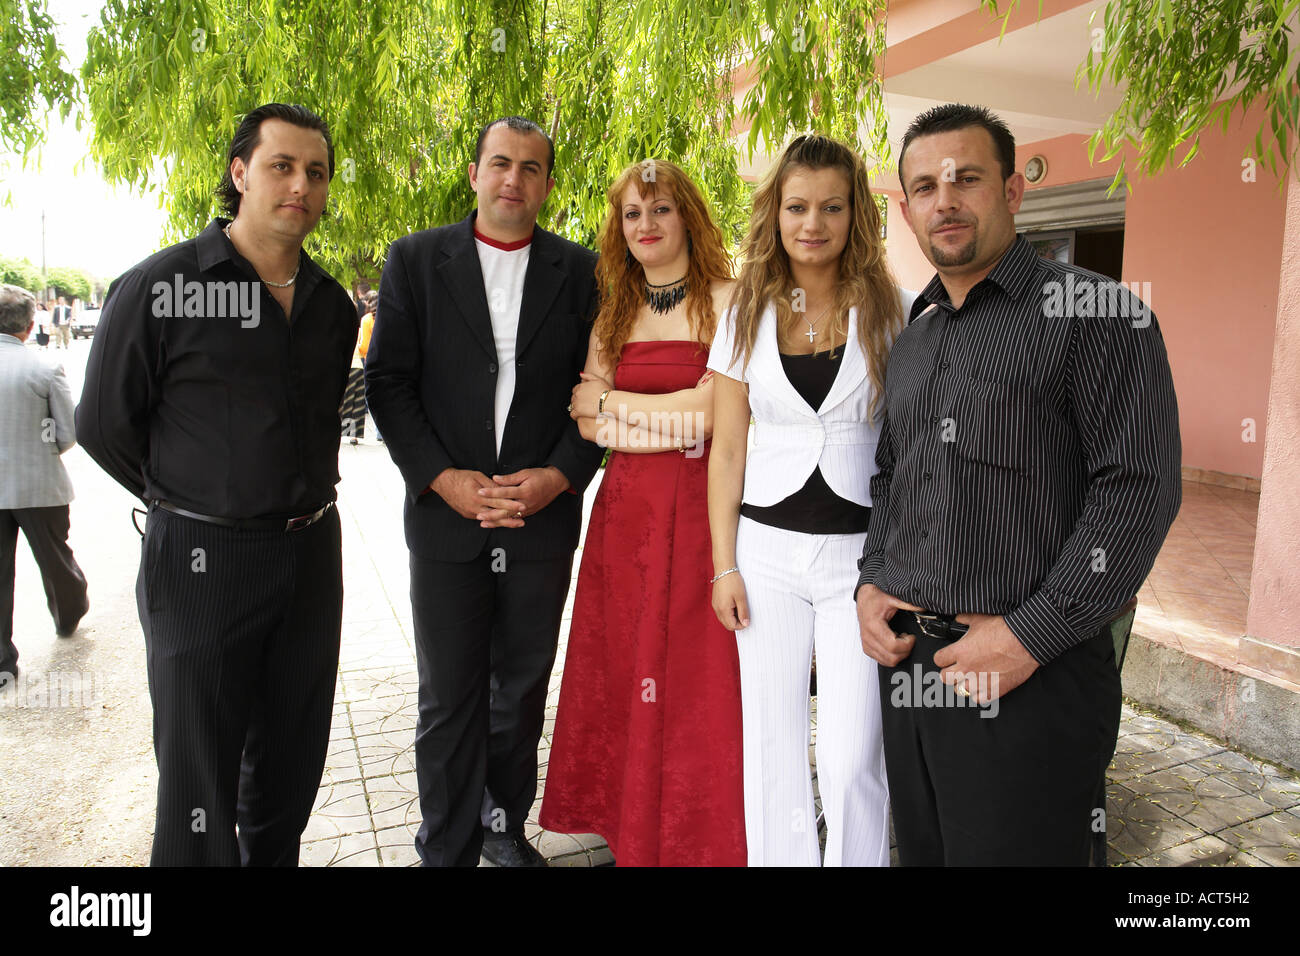 Albania personas chateando Fotografía de stock - Alamy